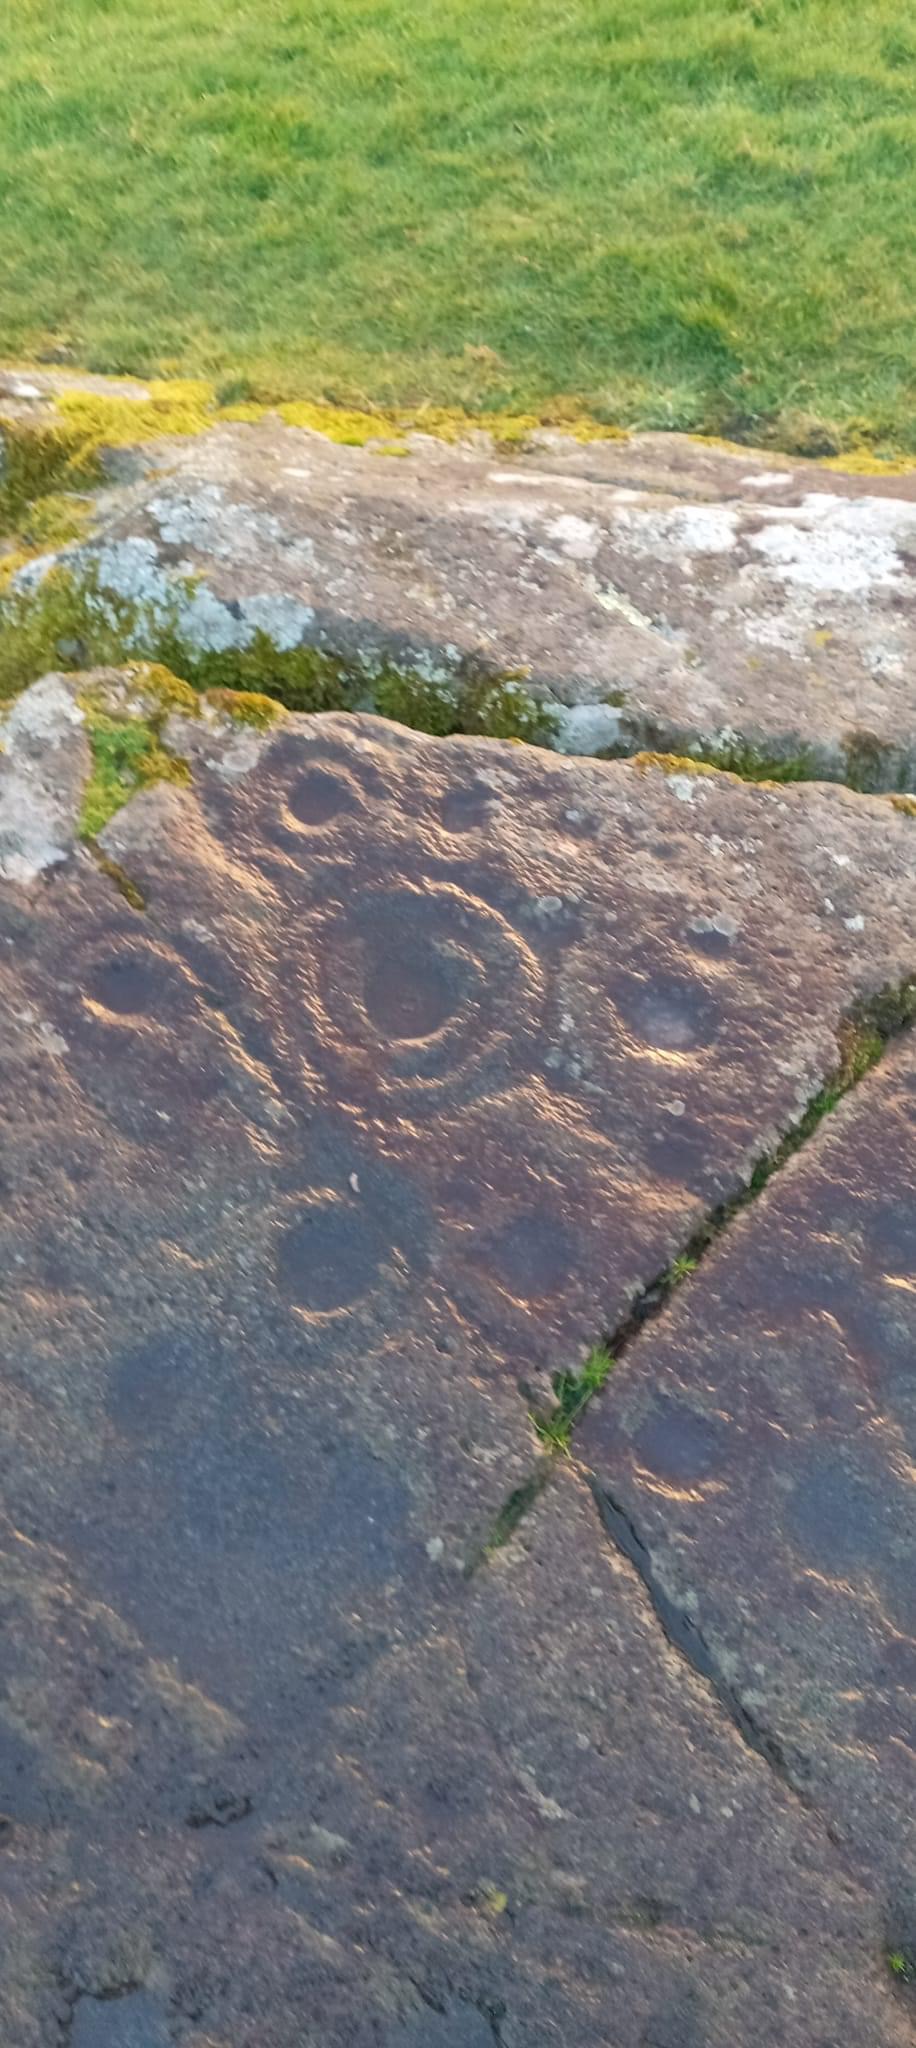 Baluachraig-i körök és gyűrűk a sziklában